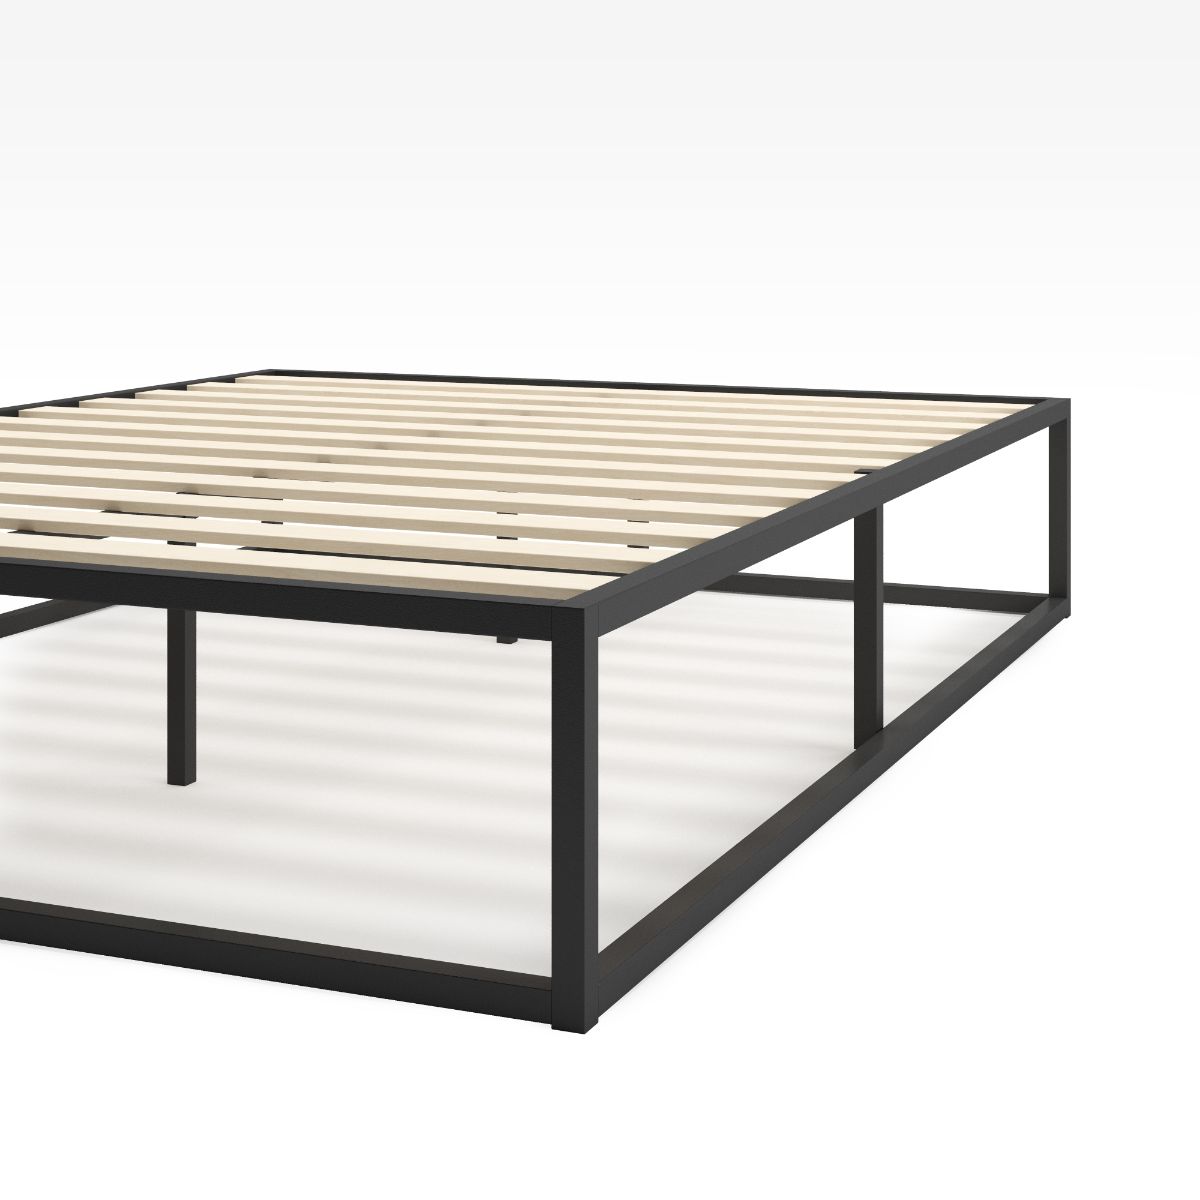 14 inch Joseph Metal Platform Bed Frame